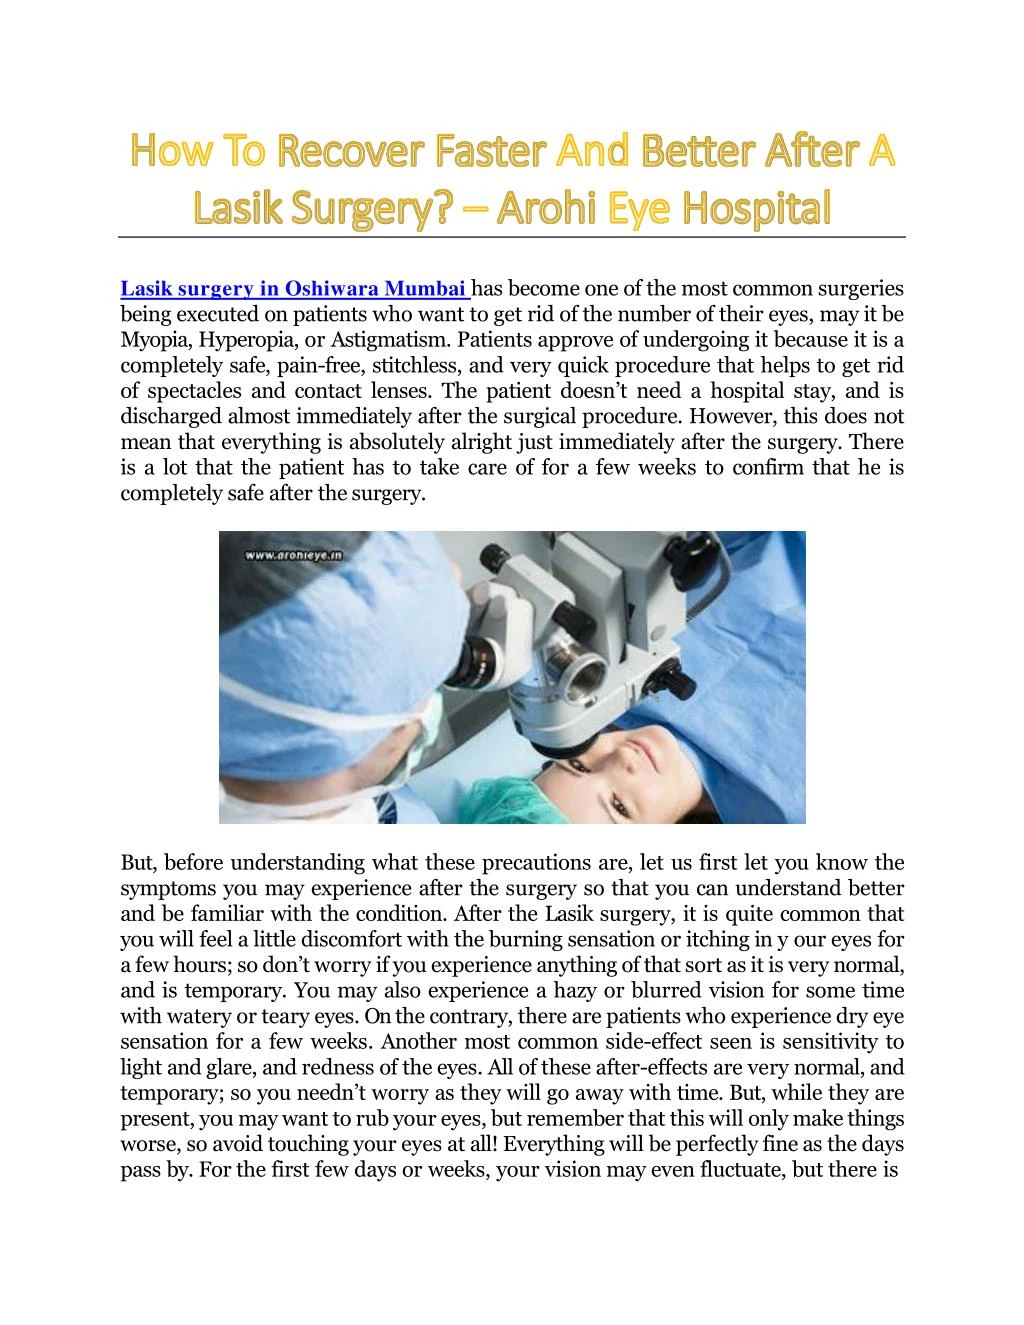 lasik surgery in oshiwara mumbai has become